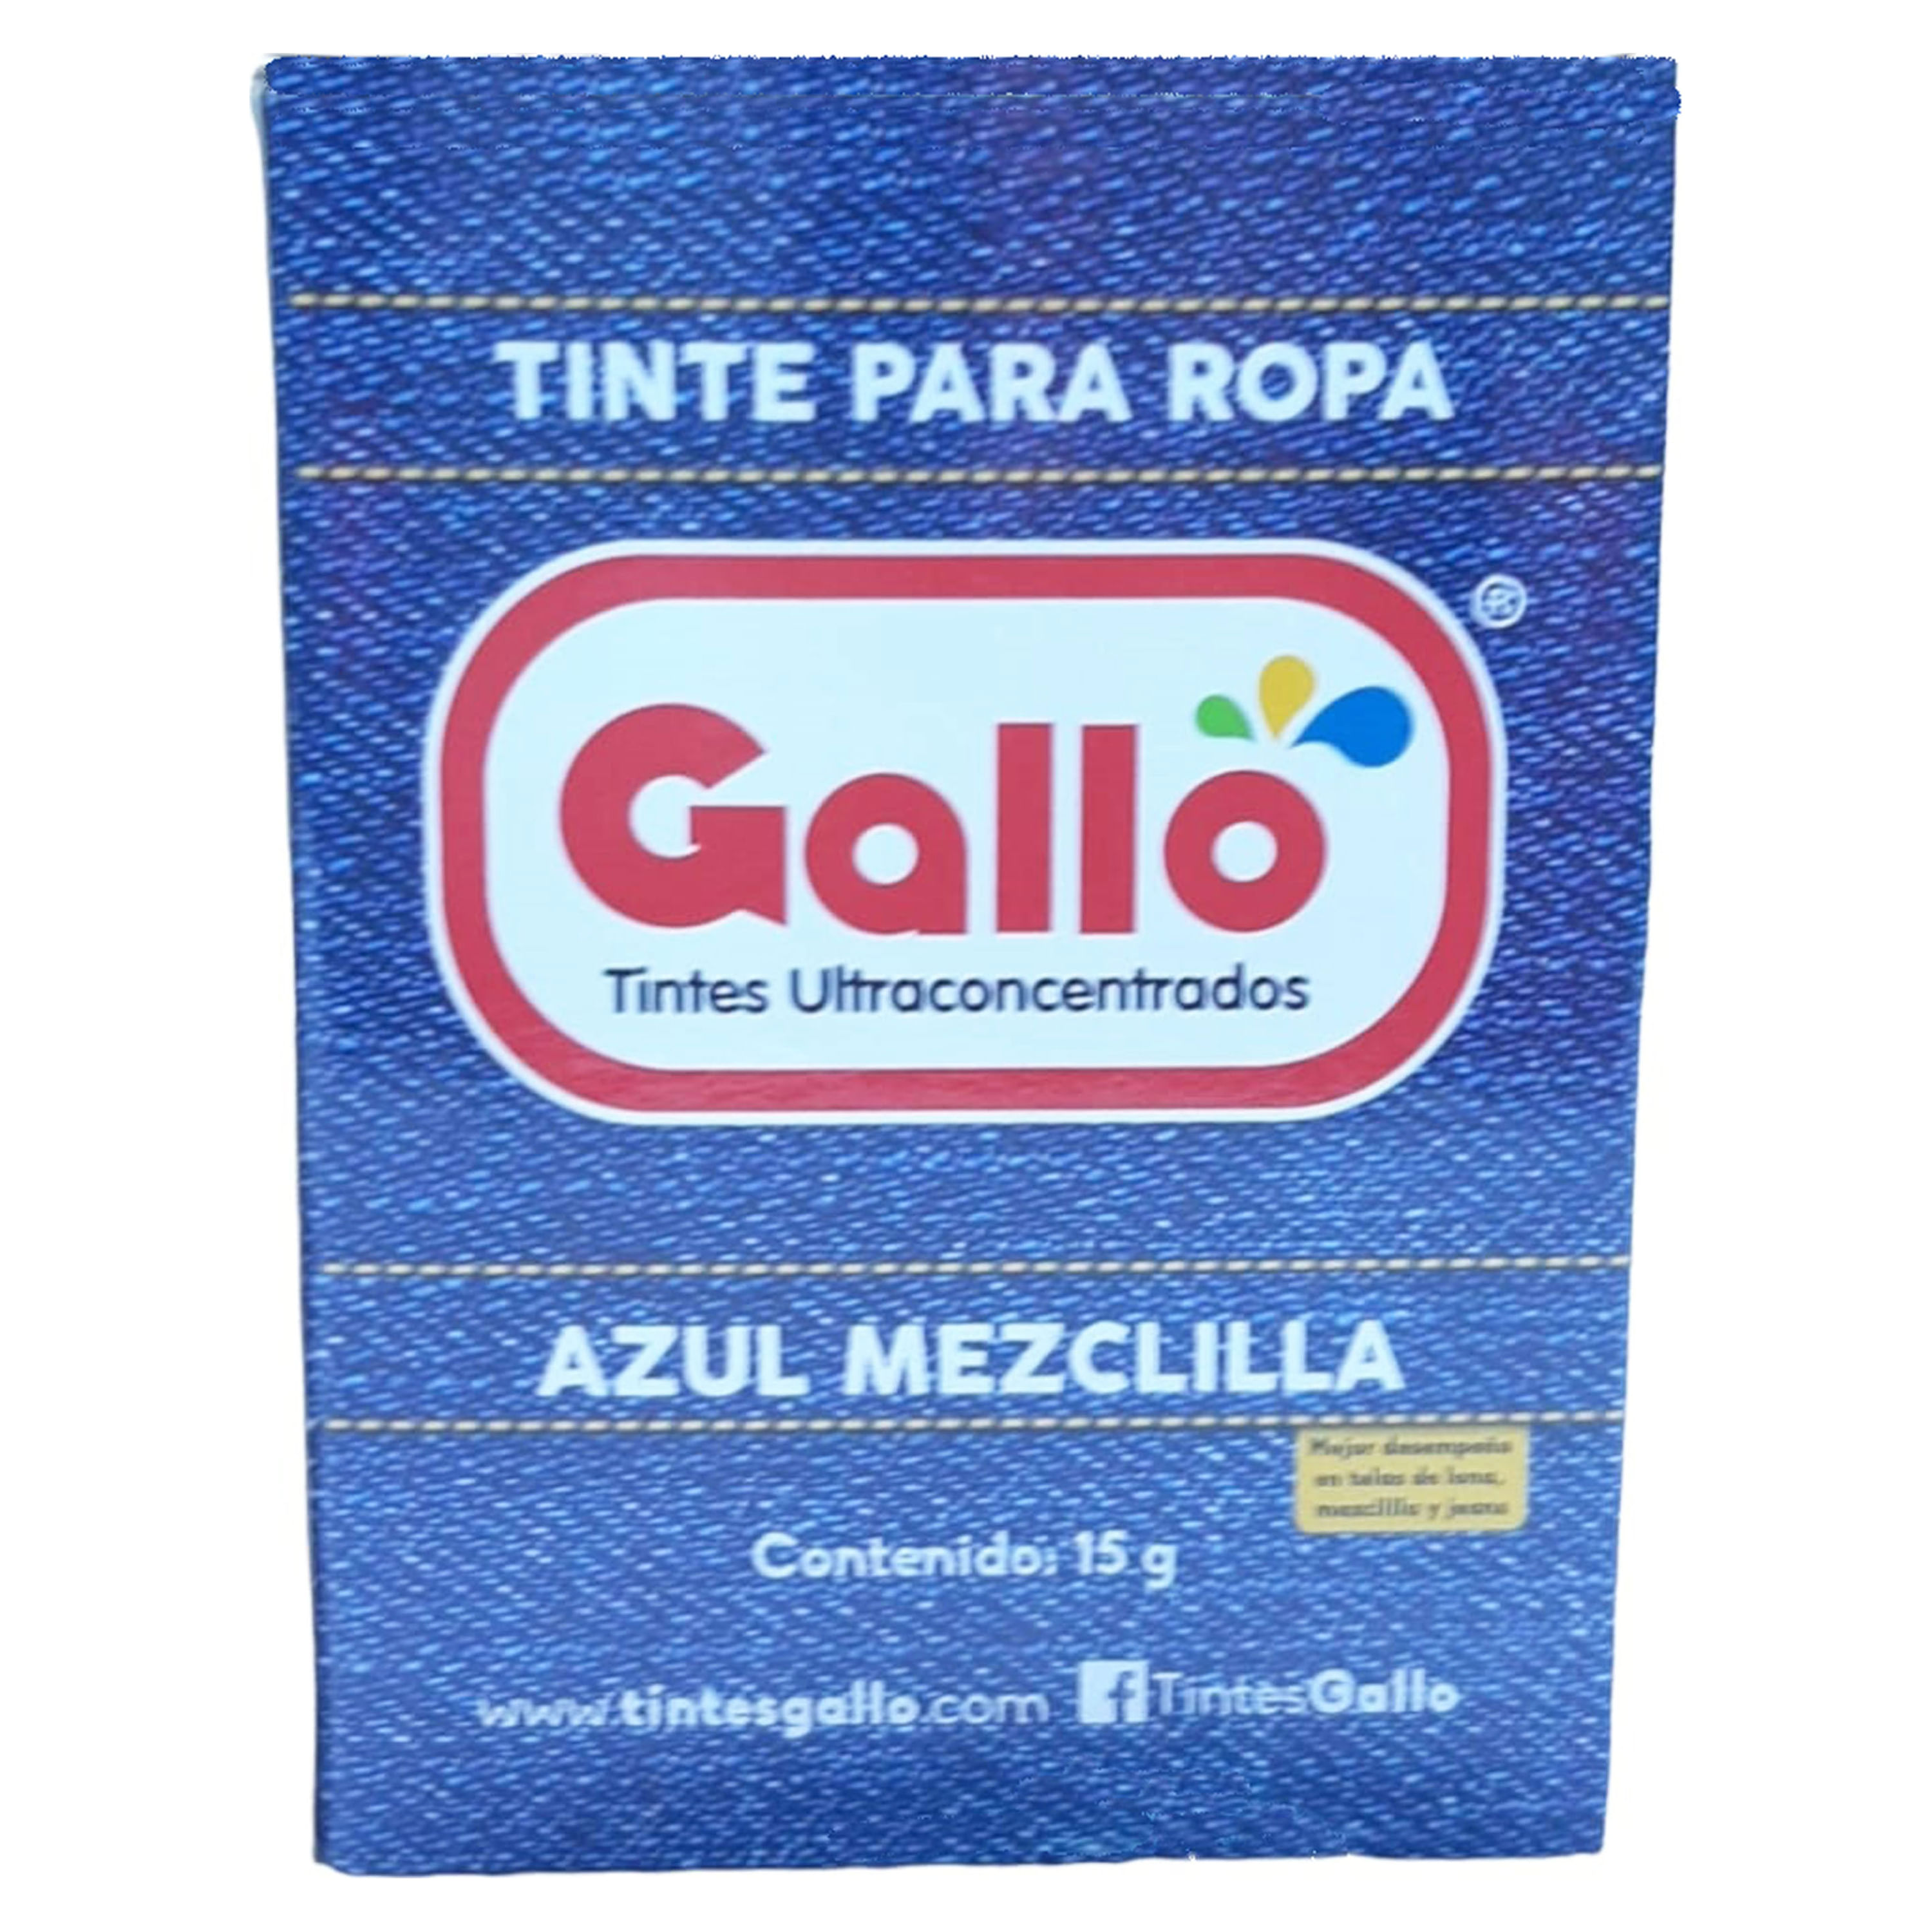 Dollarcity Guatemala - ¡Busca ya en nuestras salas Tinte de Gallo, tintes  ultra concentrados para teñir tu ropa y sobre todo fáciles de usar!